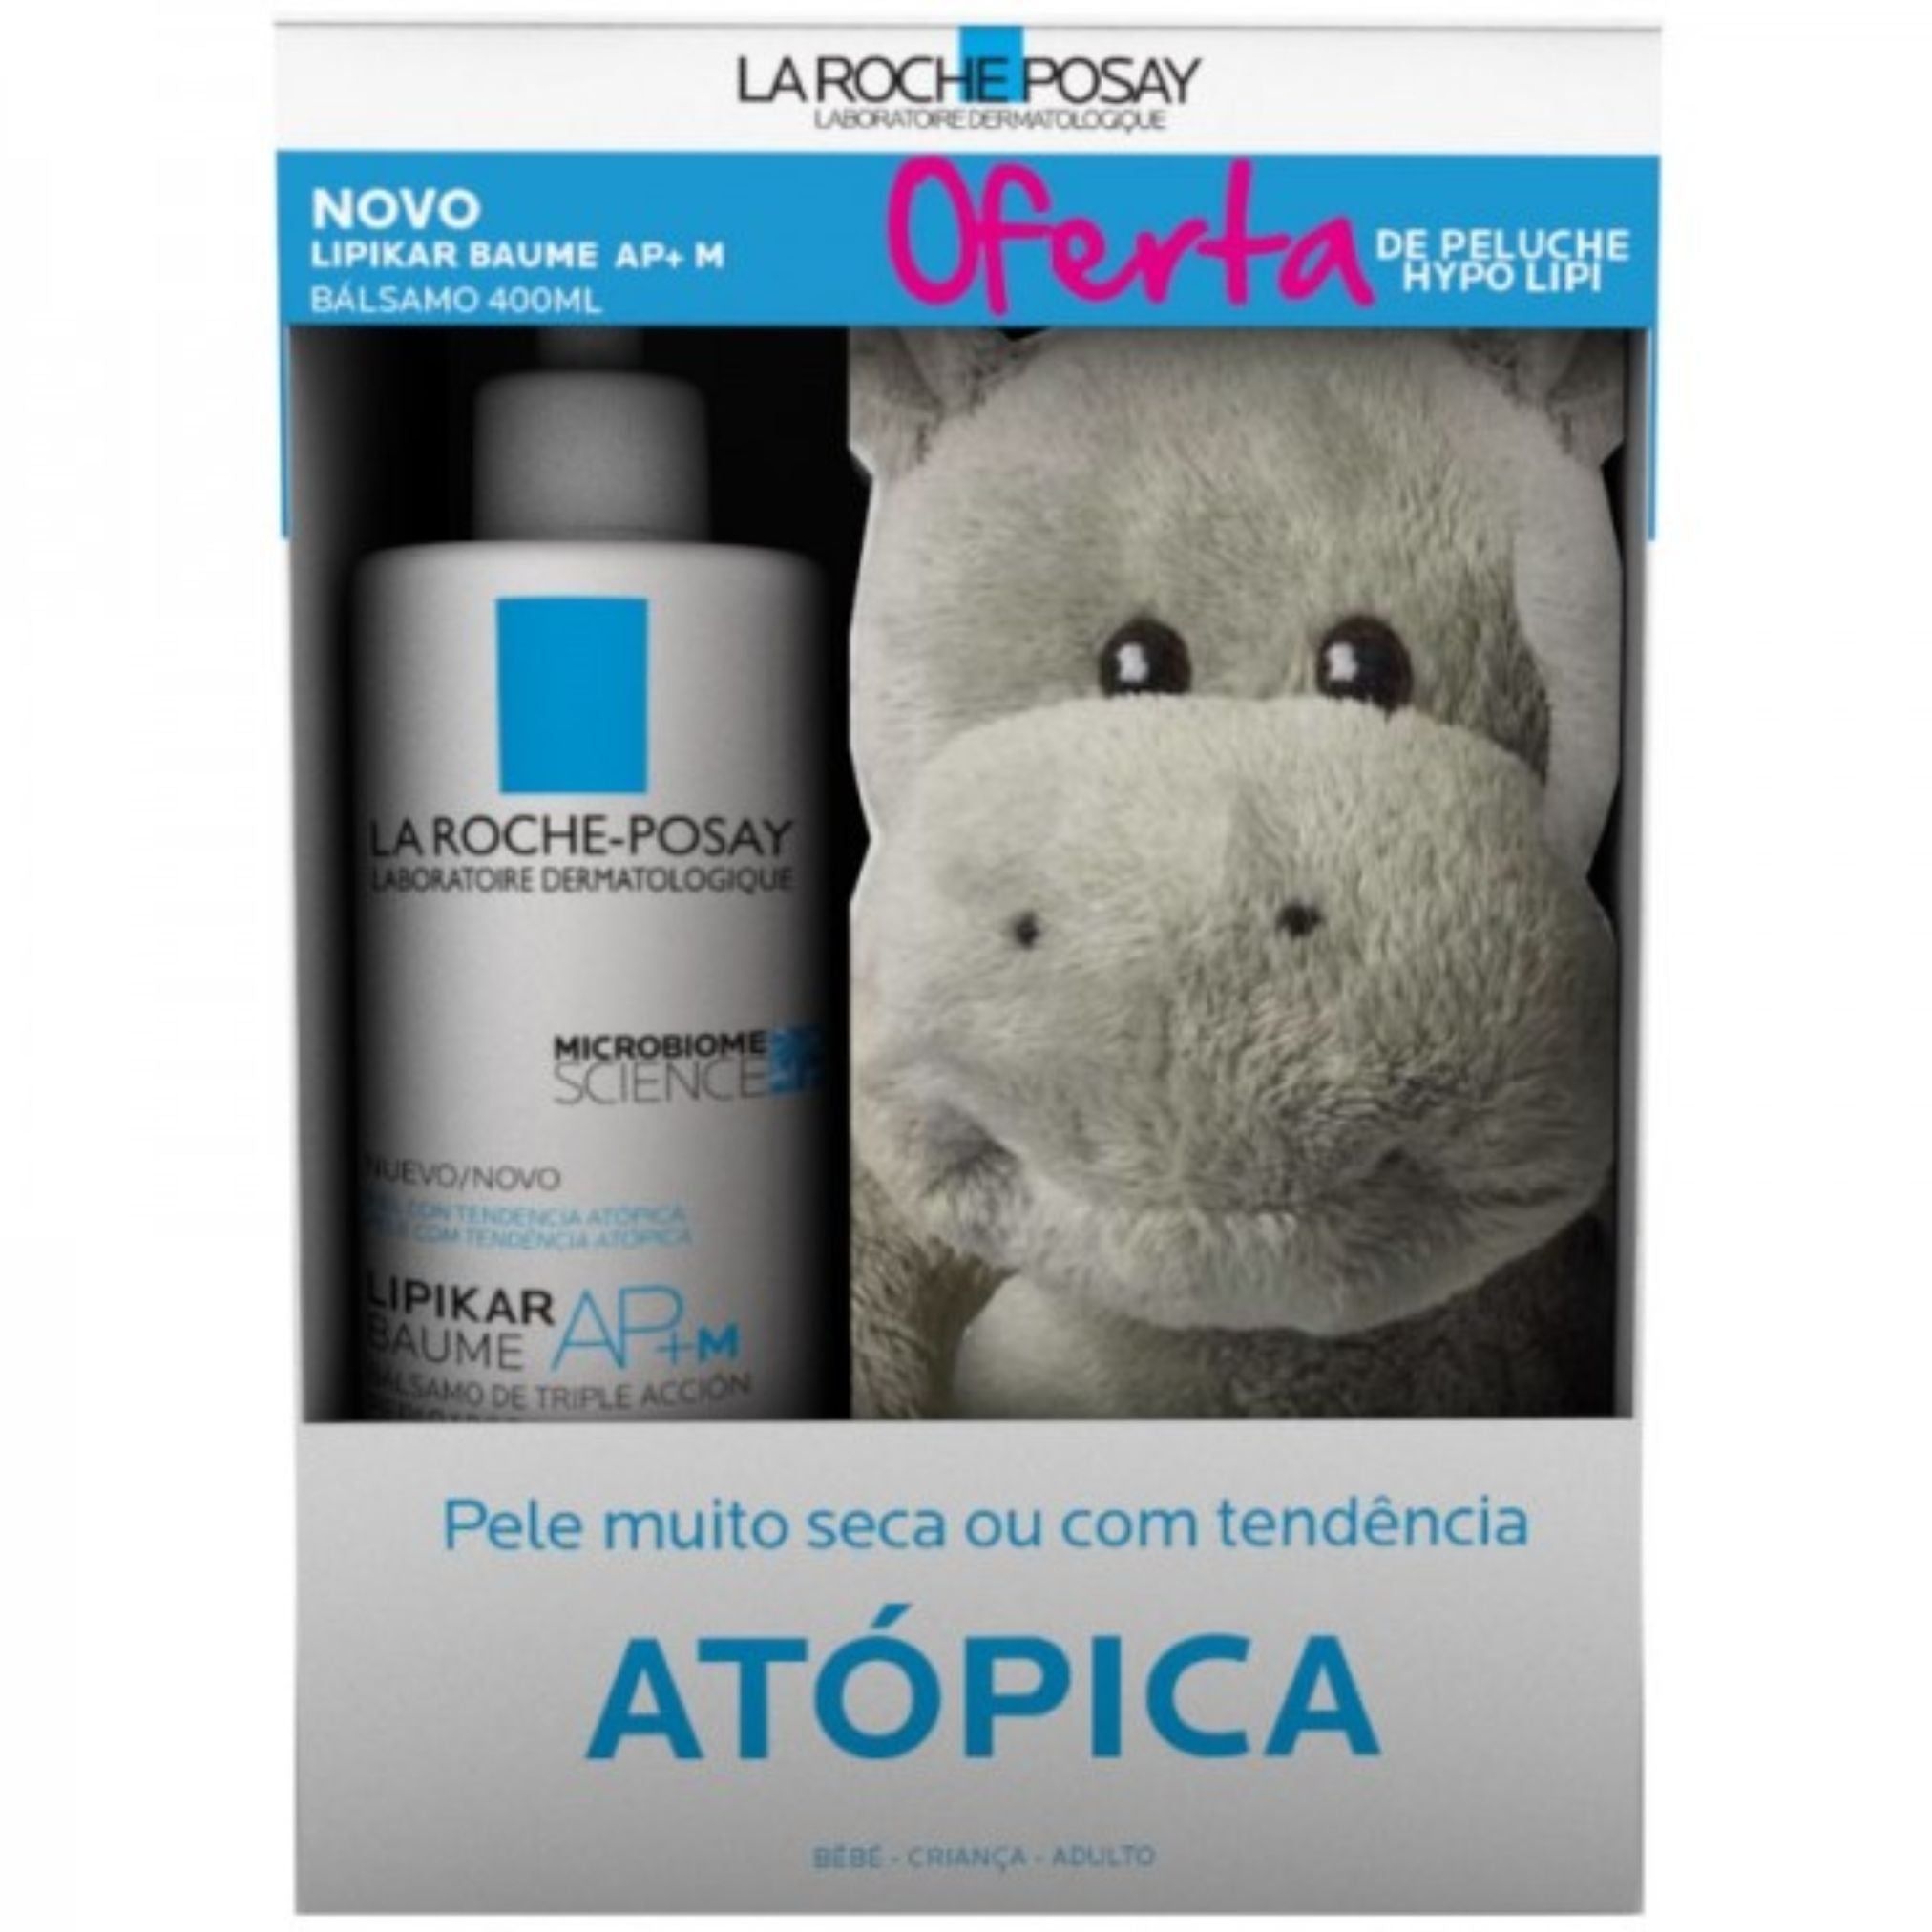 Pacote promocional La Roche-Posay: La Roche-Posay Lipikar Baume AP+M 400ml + Hypo Lipi Teddy